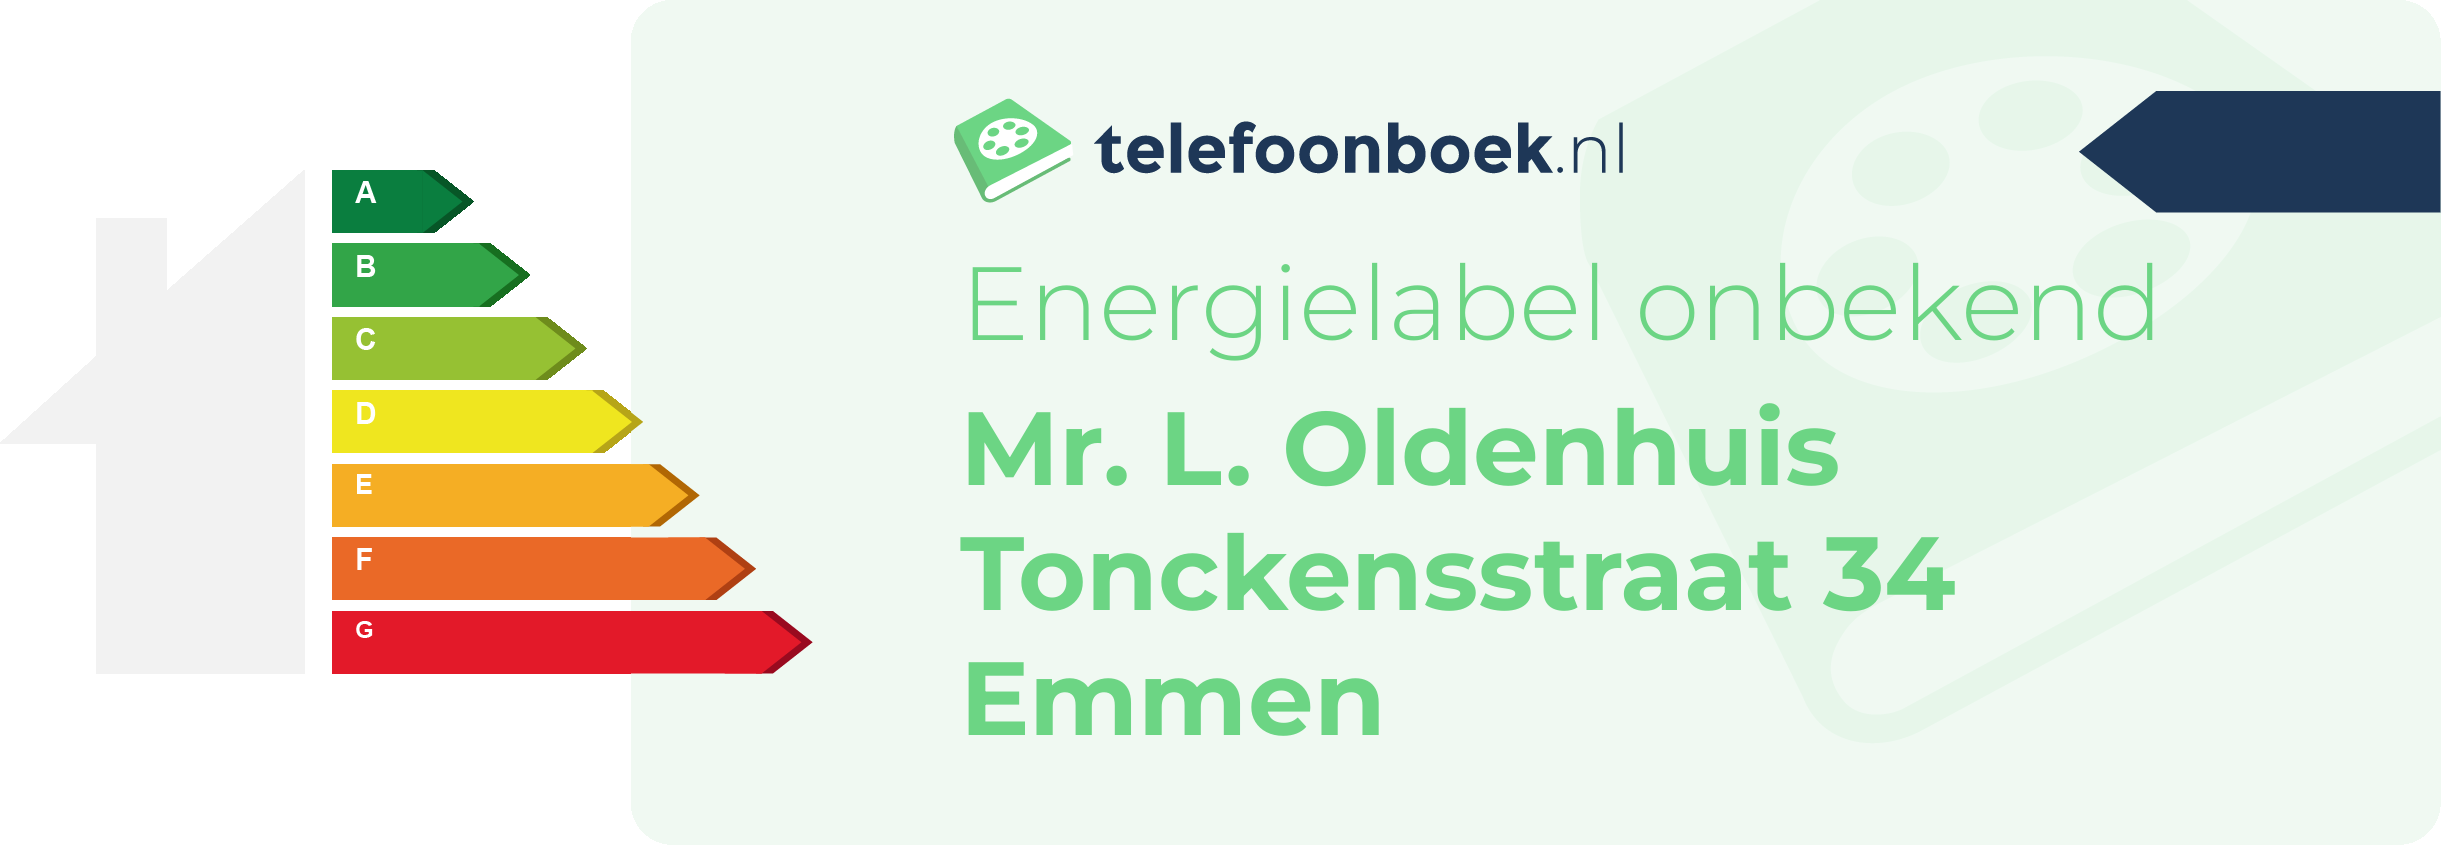 Energielabel Mr. L. Oldenhuis Tonckensstraat 34 Emmen